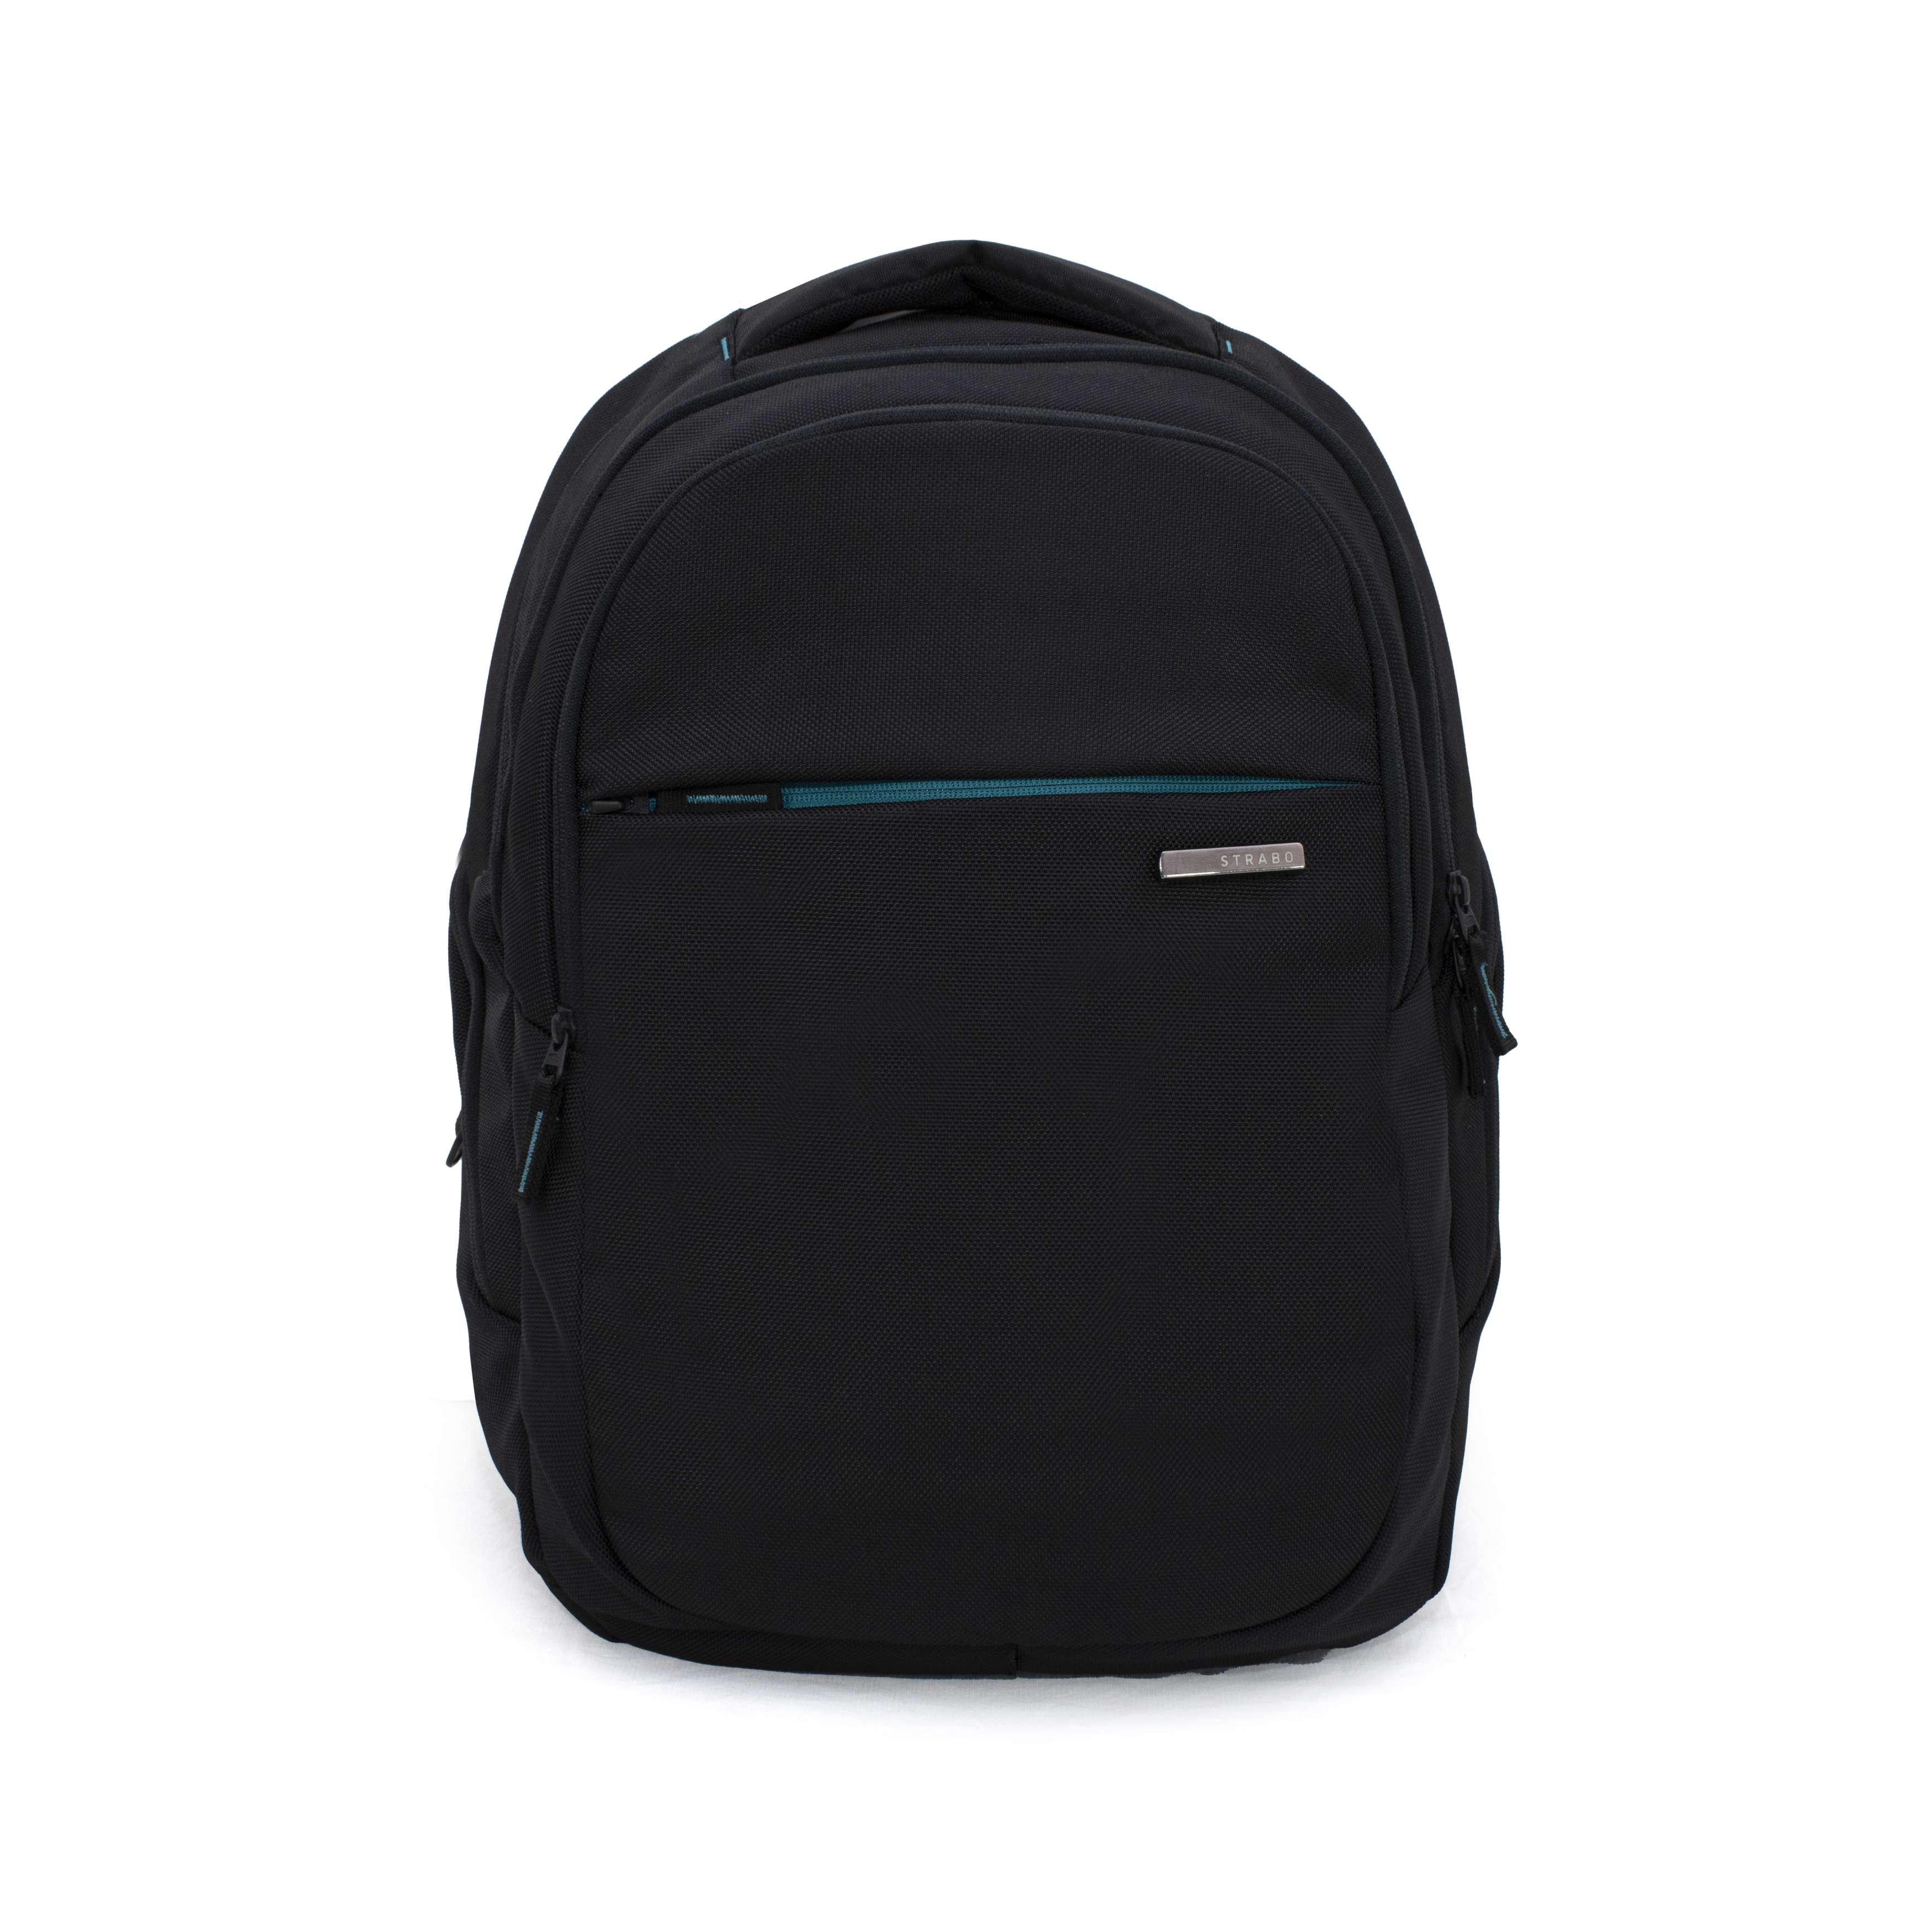 Associate | 15 inch Laptop Bag (Waterproof) | Strabo